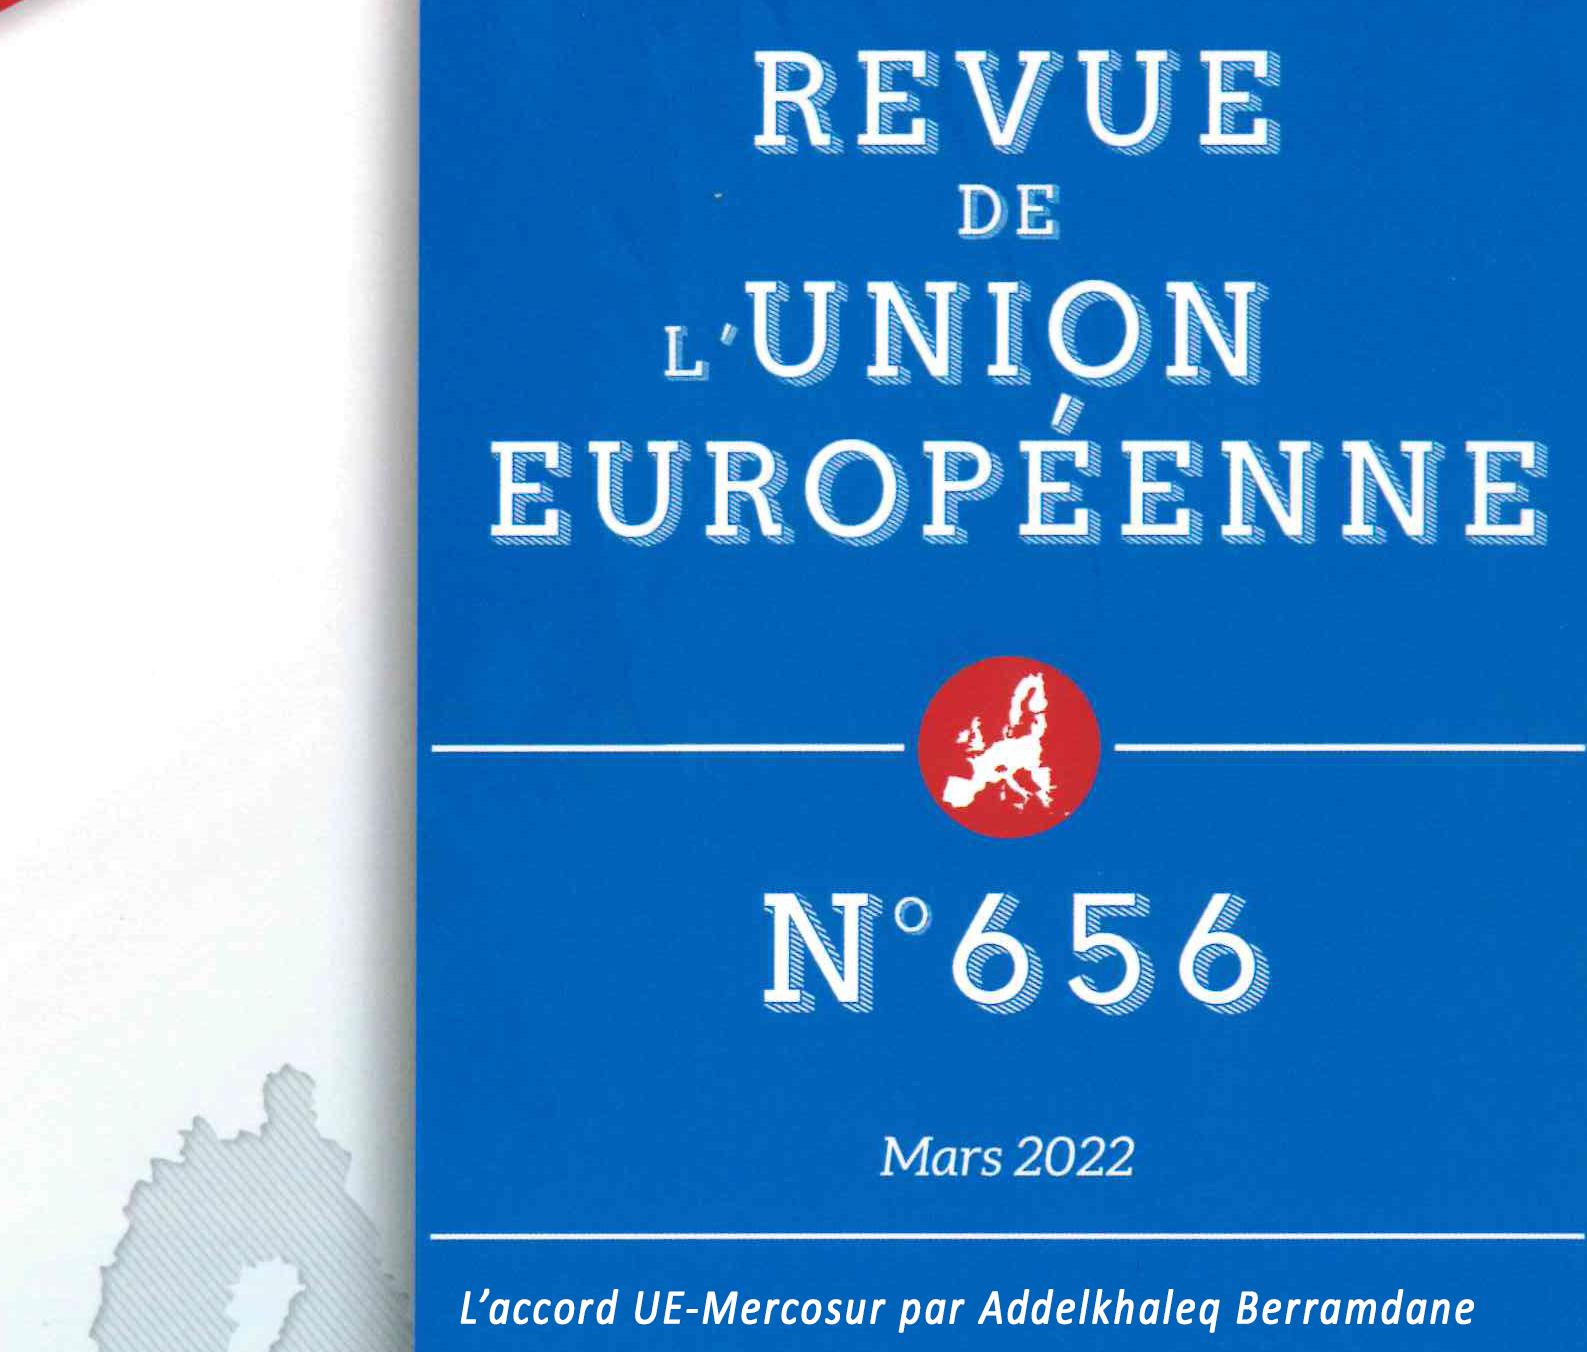 Revue de l’Union européenne n°656 mars 2022